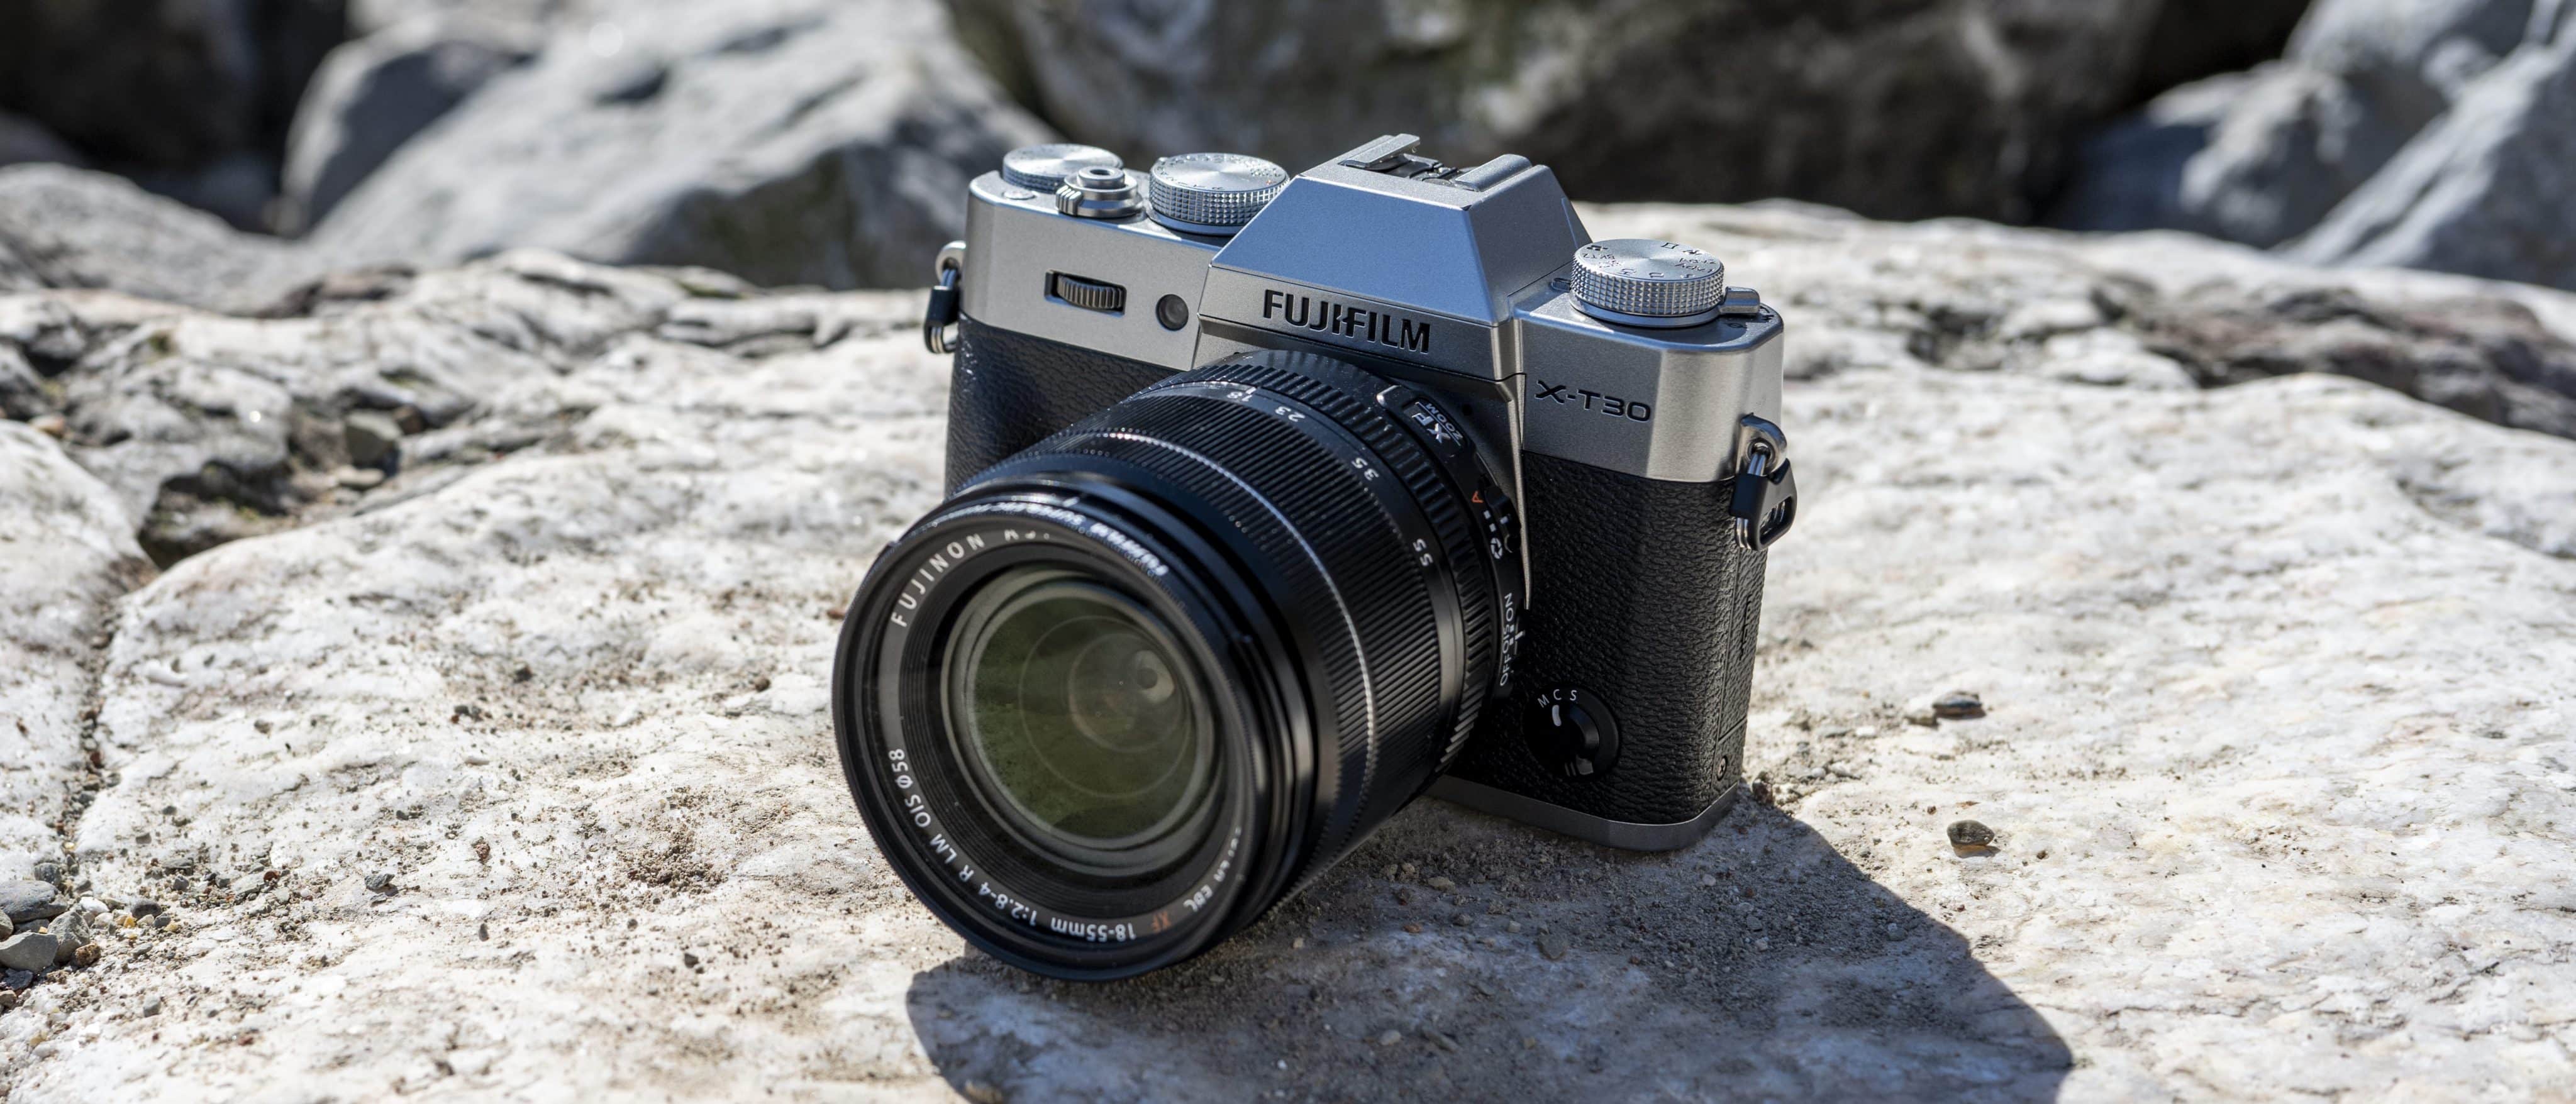 Máy ảnh Fujifilm X-T30 II với ống kính XC 15-45mm (Black)